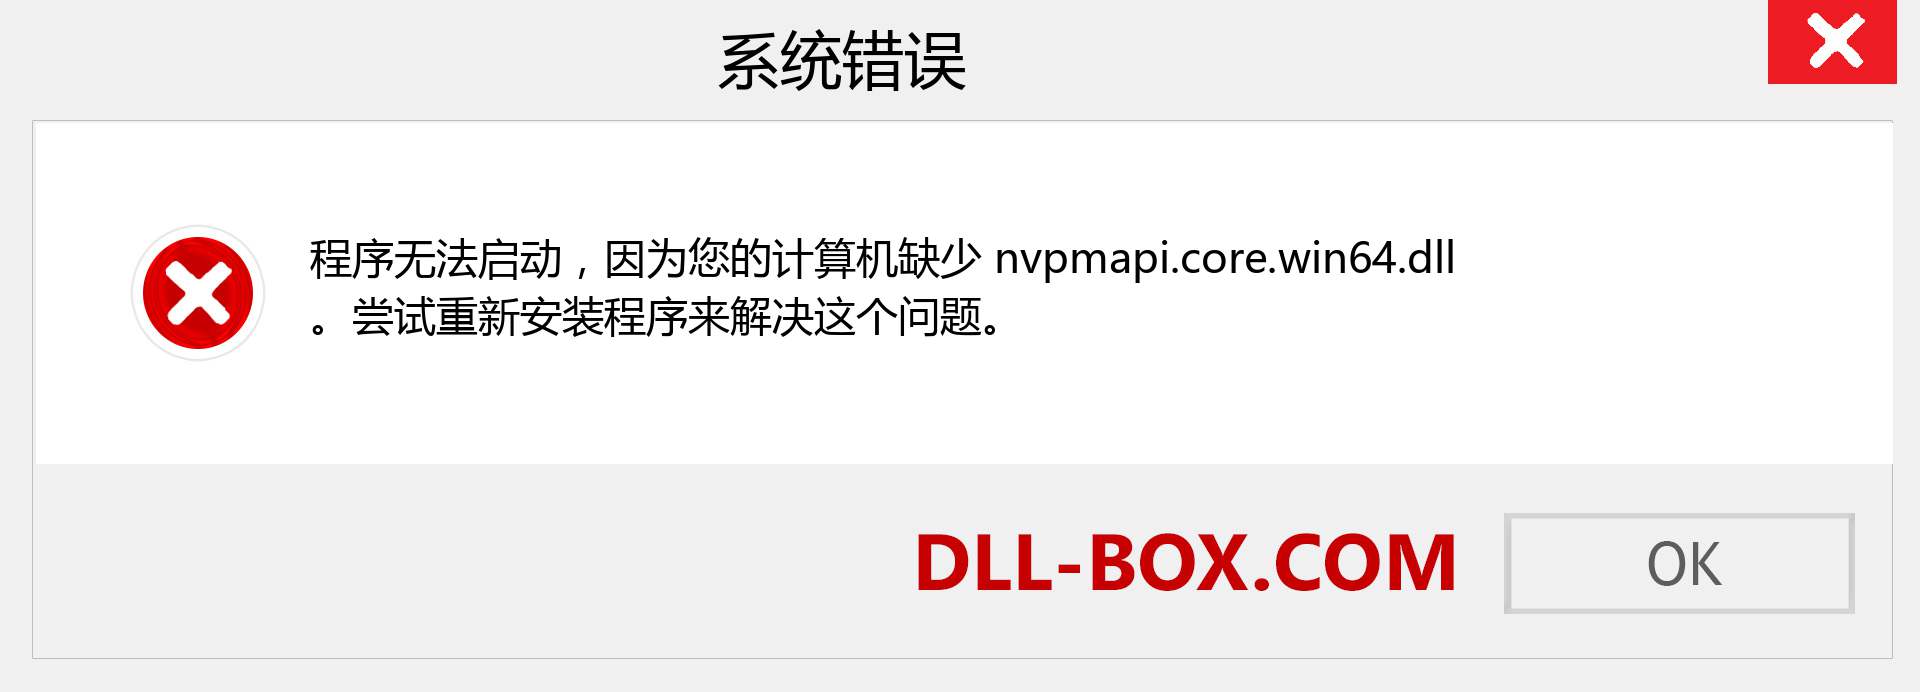 nvpmapi.core.win64.dll 文件丢失？。 适用于 Windows 7、8、10 的下载 - 修复 Windows、照片、图像上的 nvpmapi.core.win64 dll 丢失错误